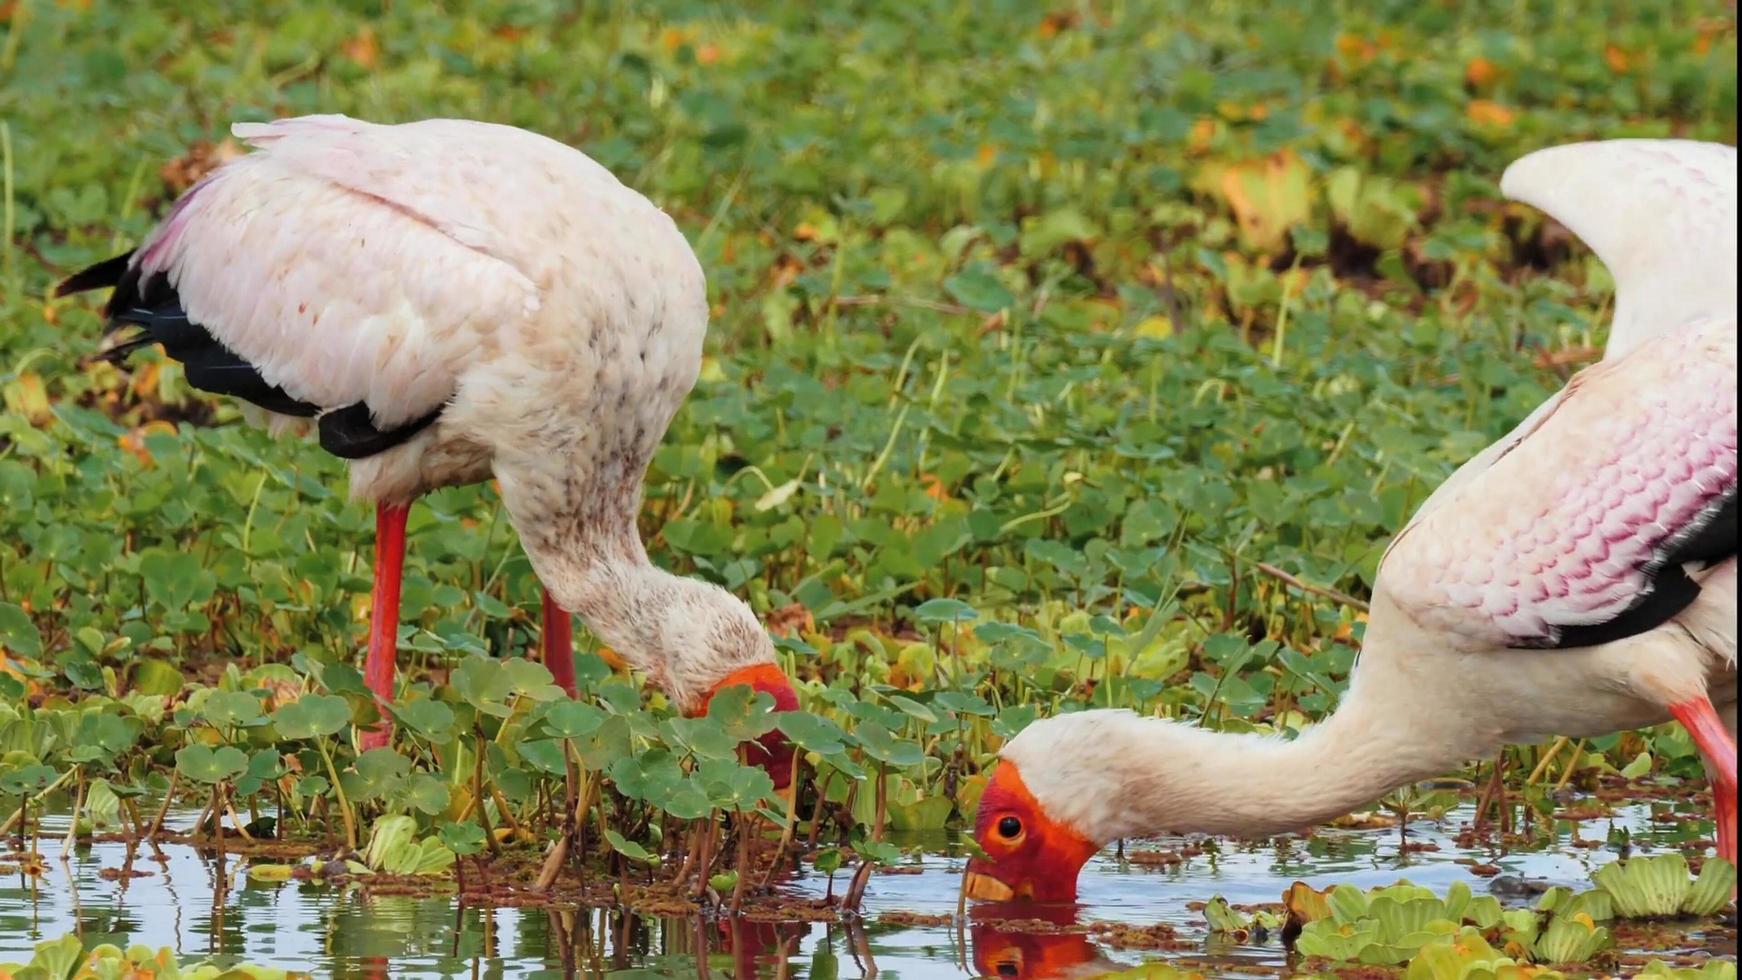 Dos aves cigüeña migratoria con picos anaranjados y cabeza buscando comida en el estanque foto